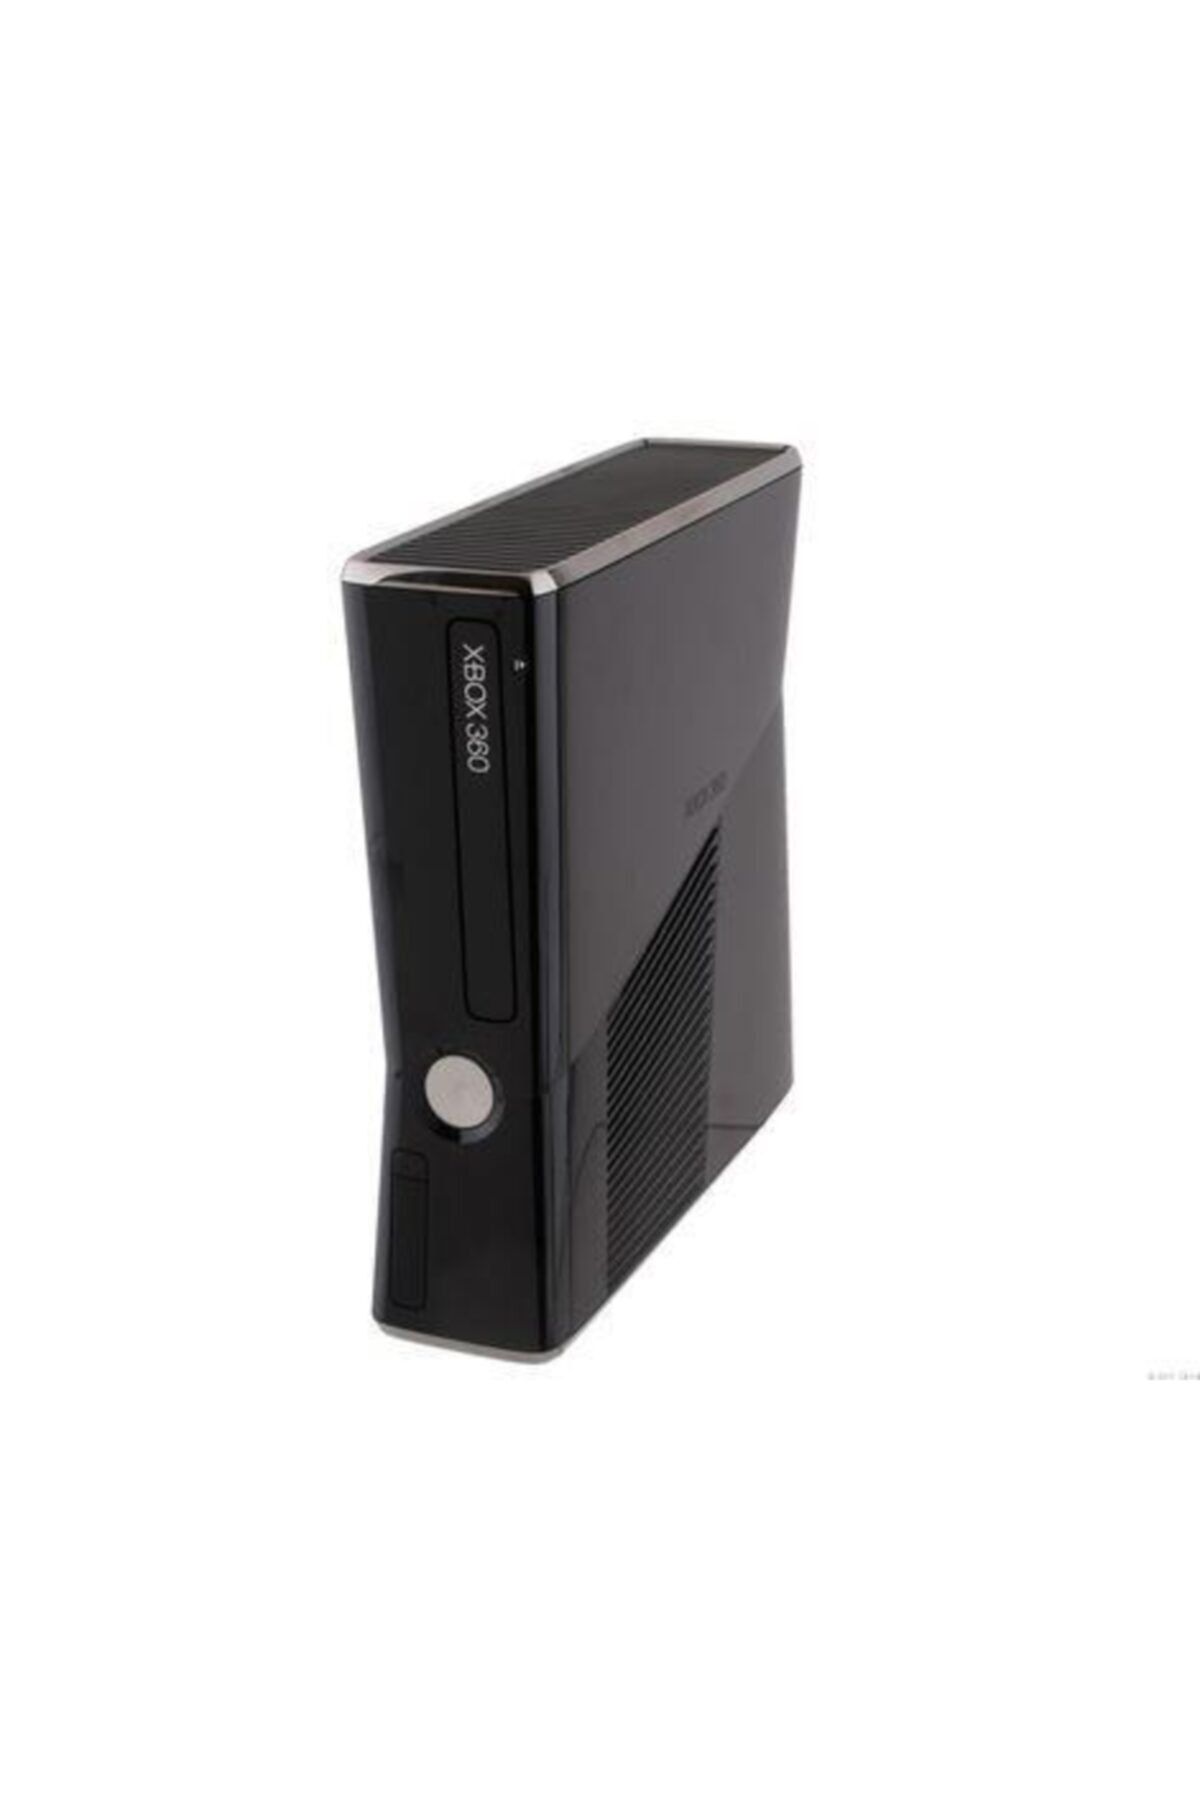 Microsoft Xbox 360 S Jtag Teşhir Kinect - 1tb - 170 Oyun Jtagli)